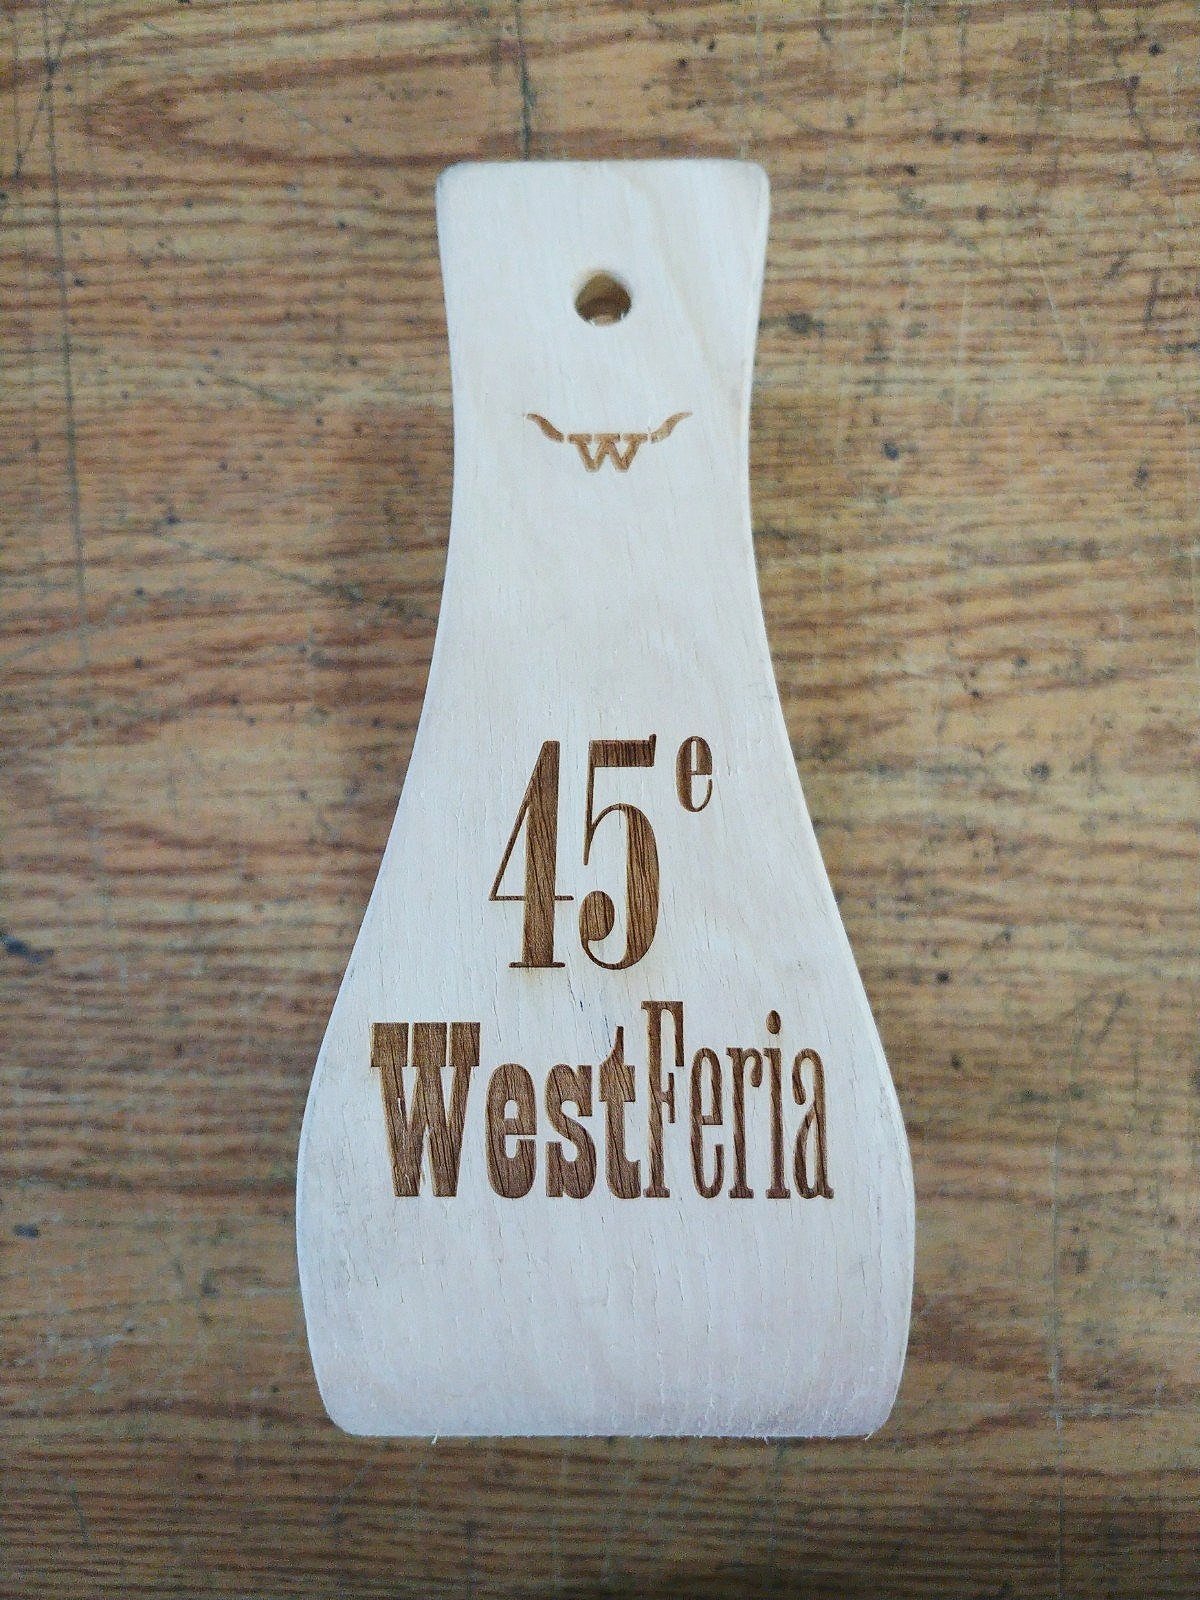 Étrier en bois pour souligner la 45e édition du WestFeria de Sorel, réalisé par Systana Gravure Laser